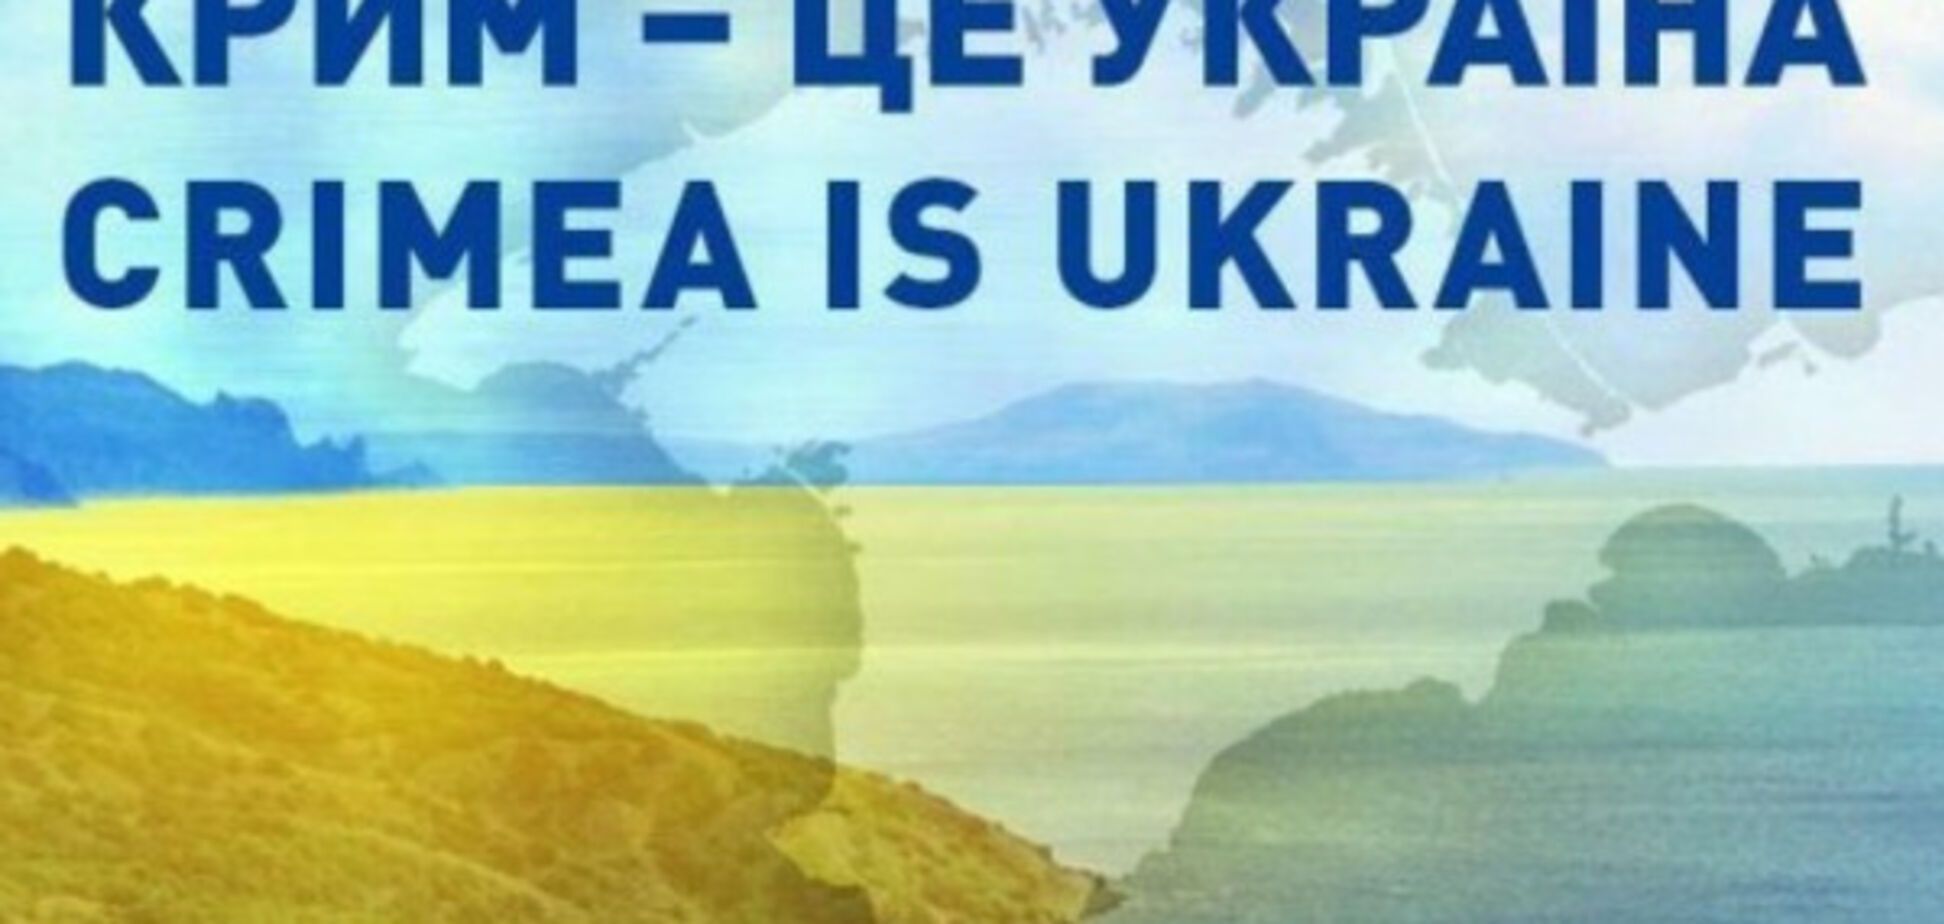 Крым, Украина